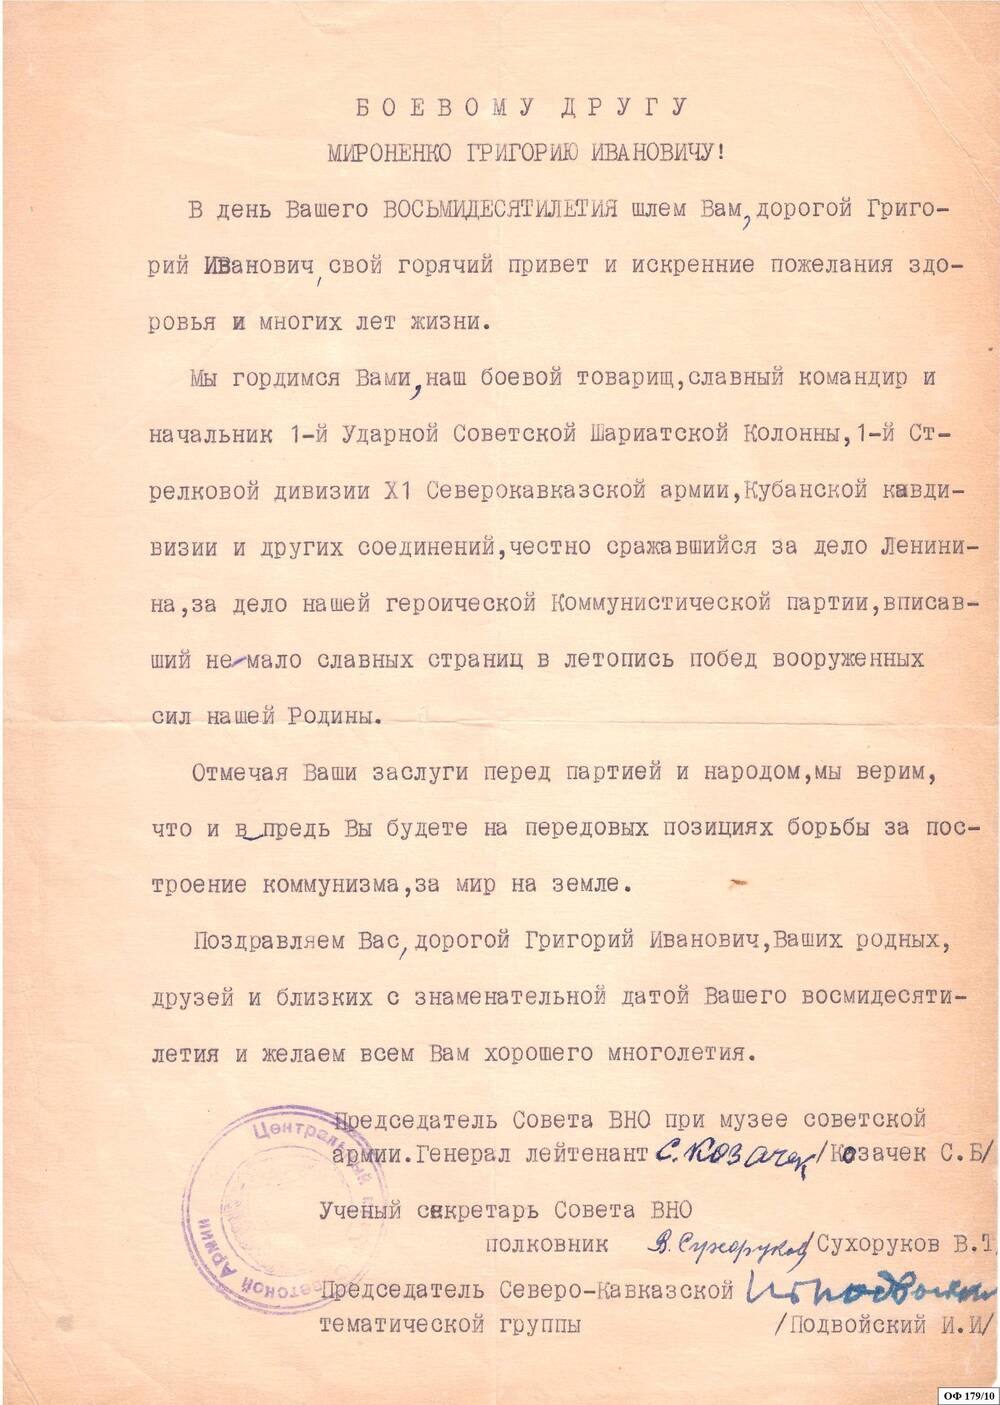 Коллекция поздравительных адресов и памятных писем Мироненко Григория Ивановича Почётного гражданина г. Железноводска.